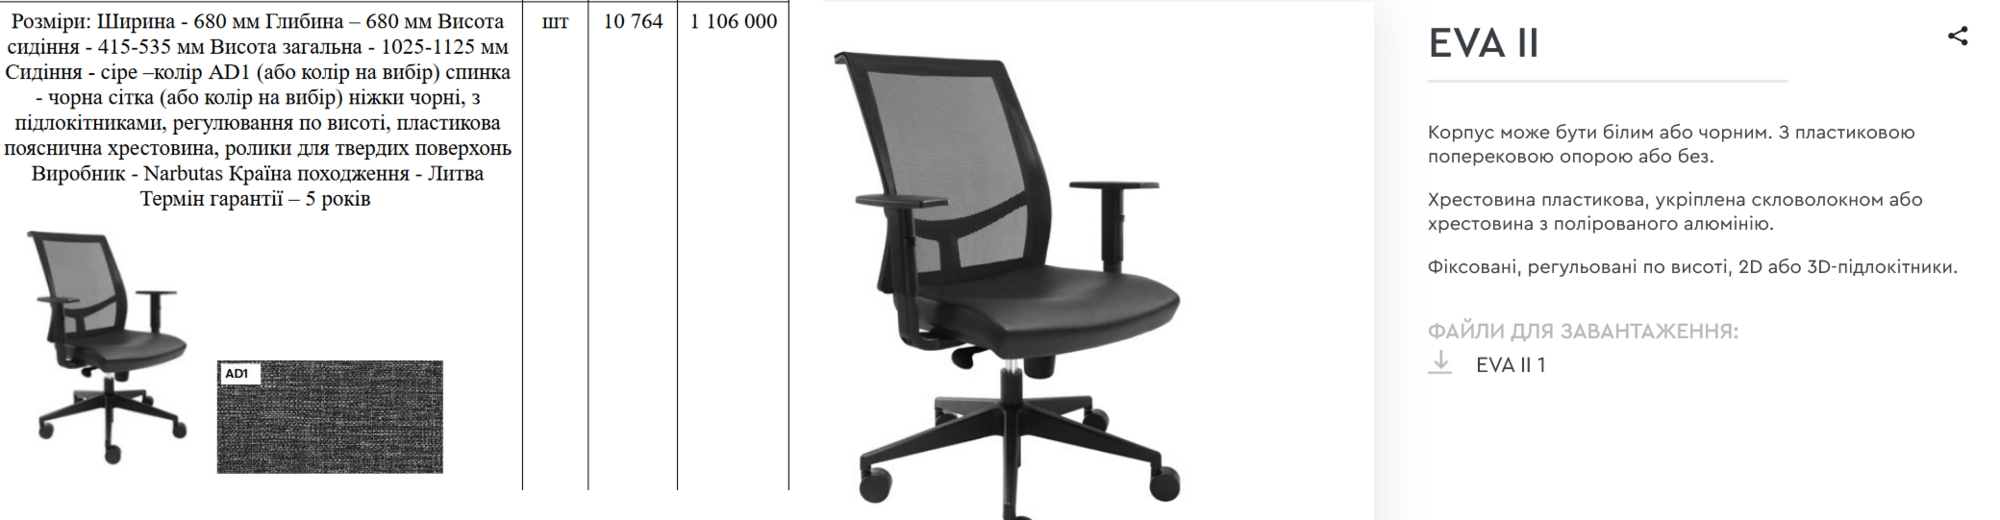 ПриватБанку нужны дорогие офисные кресла